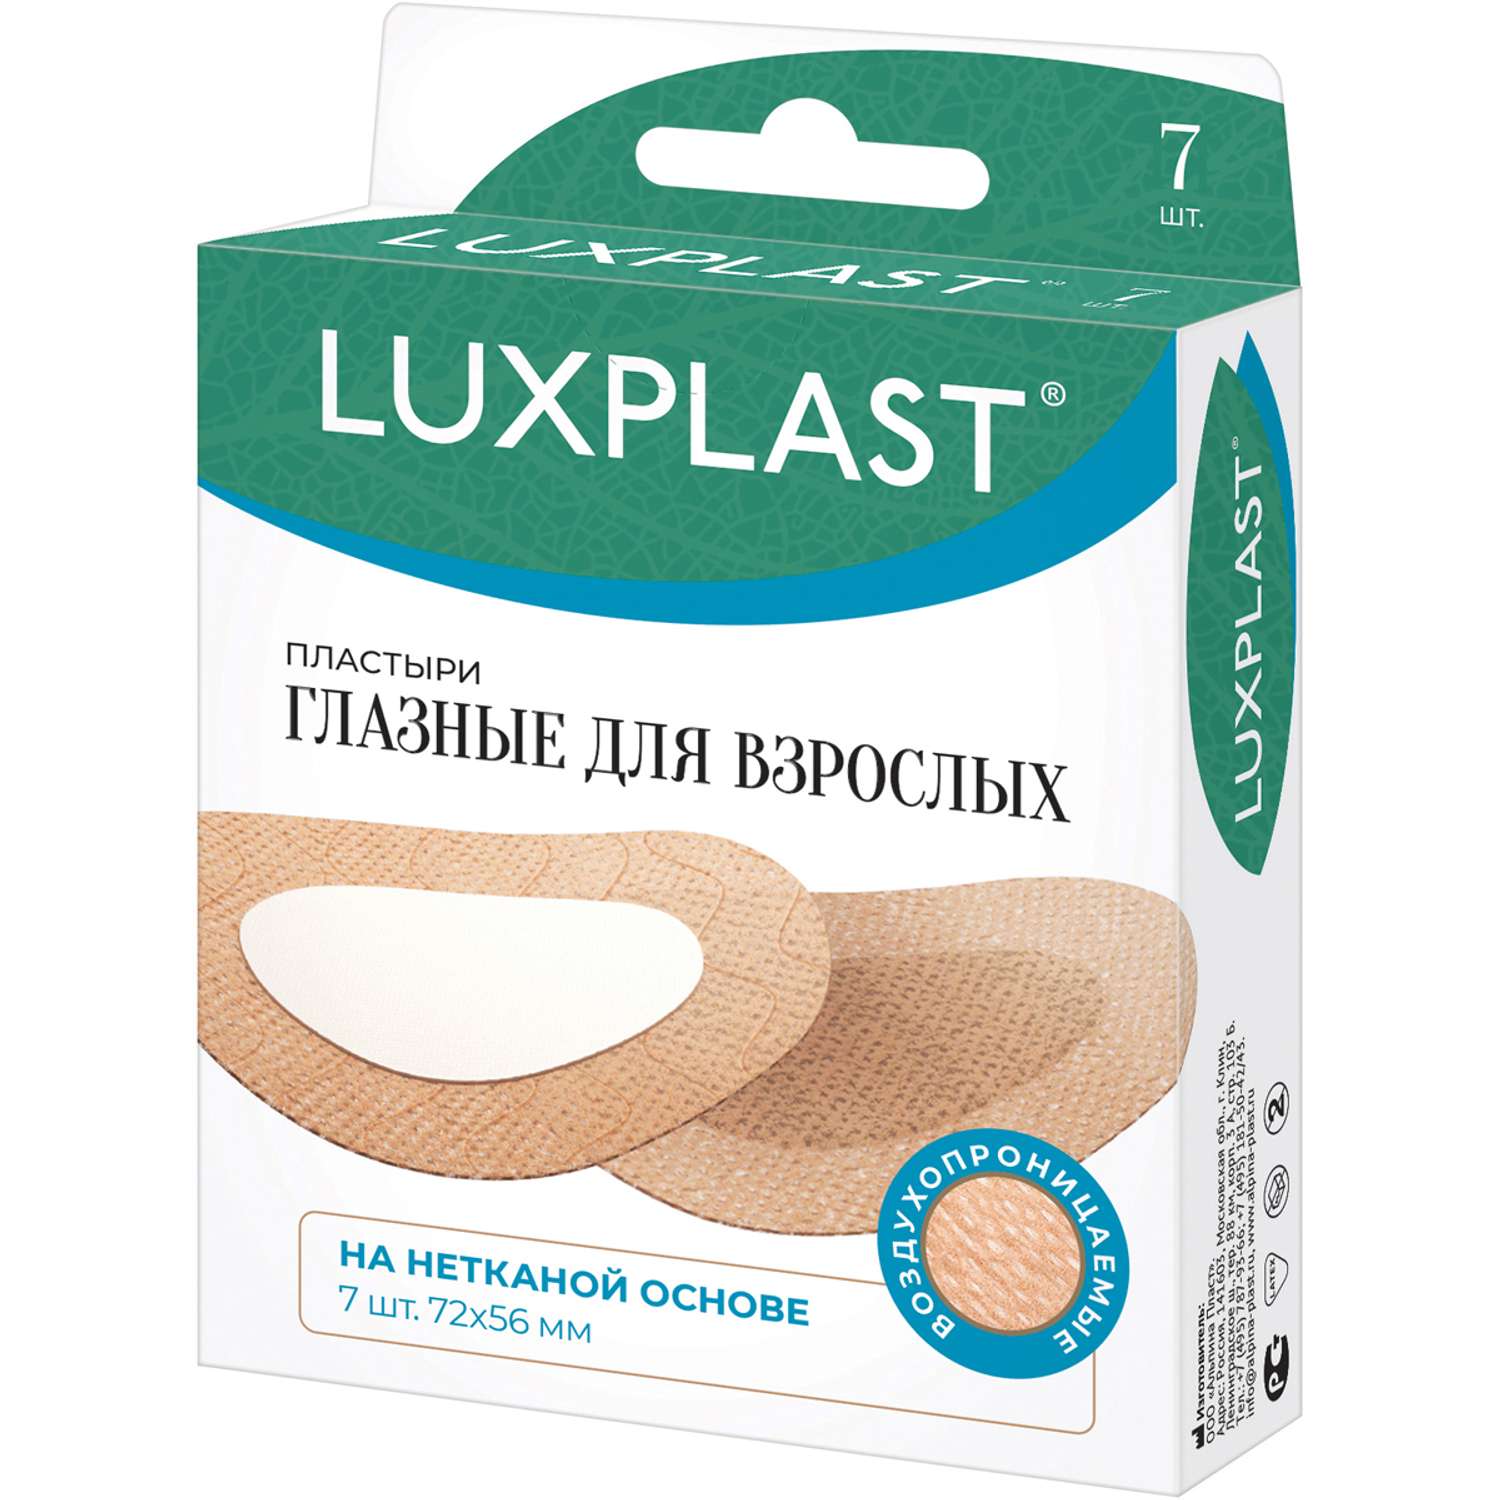 Пластыри глазные Luxplast для взрослых 7 шт - фото 1